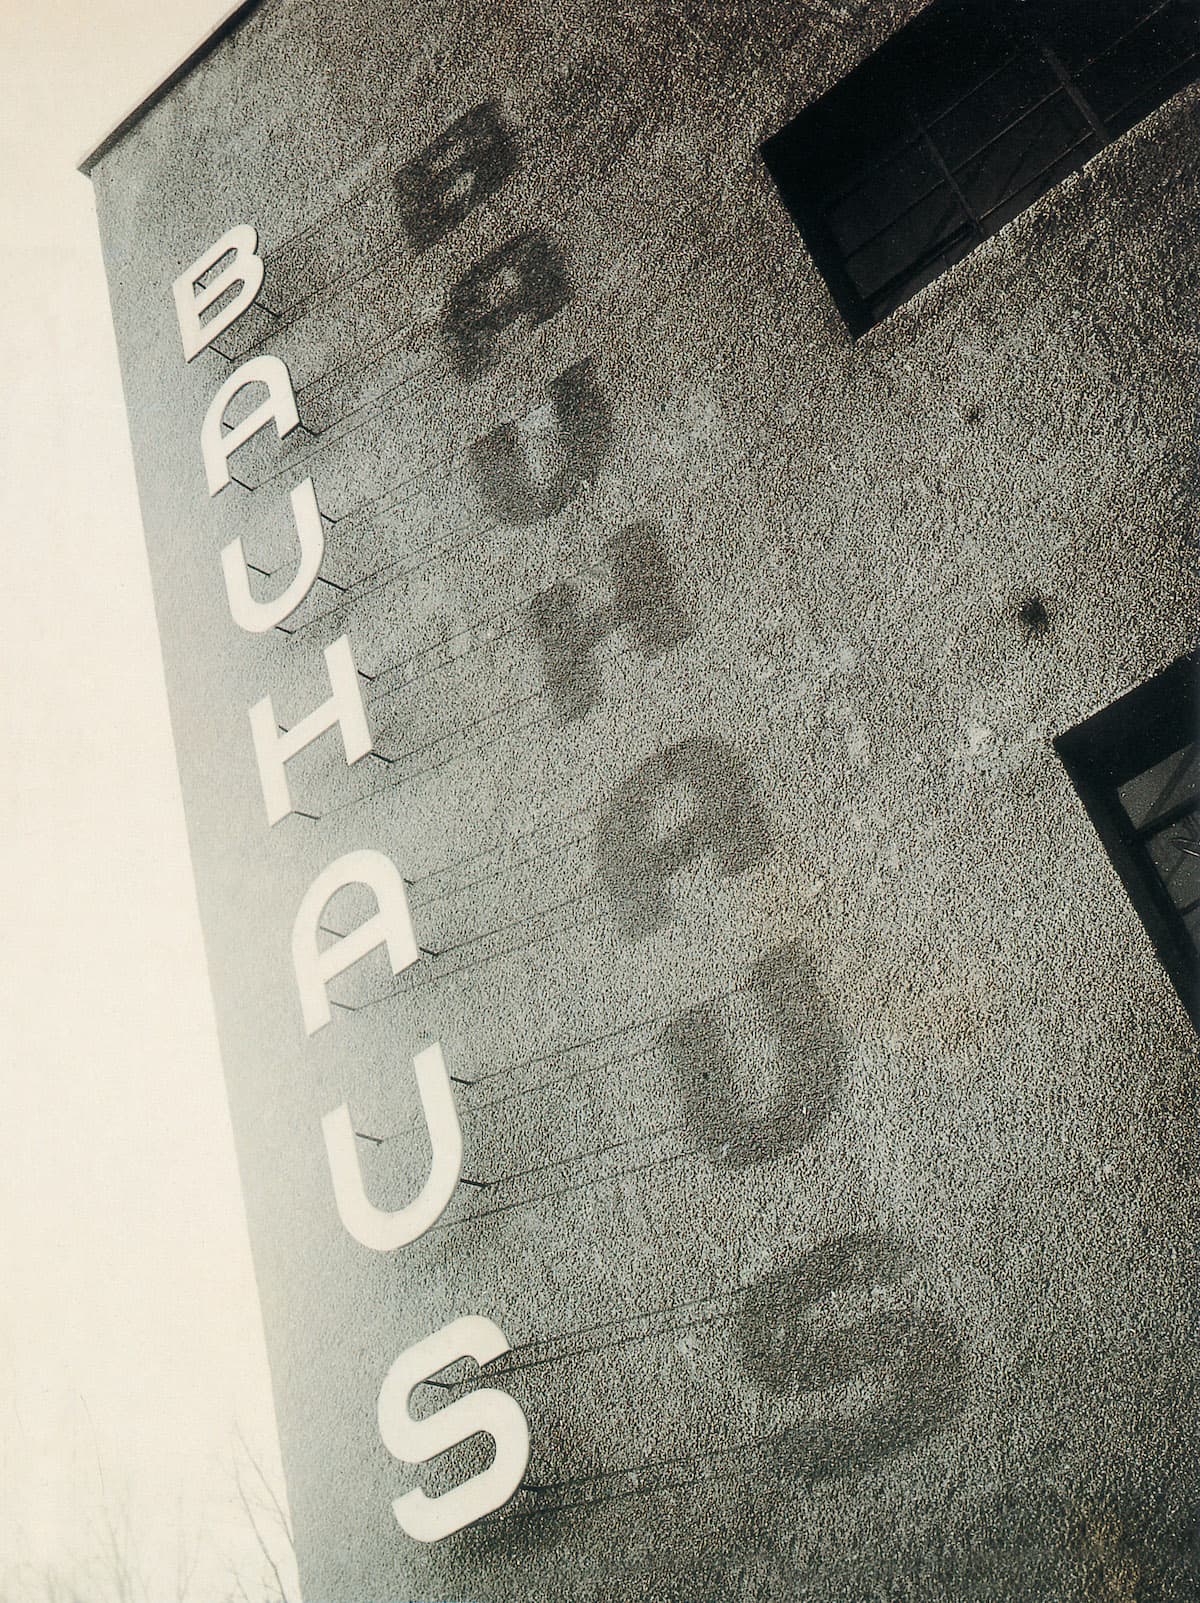 TASCHEN - 100 Jahre Bauhaus